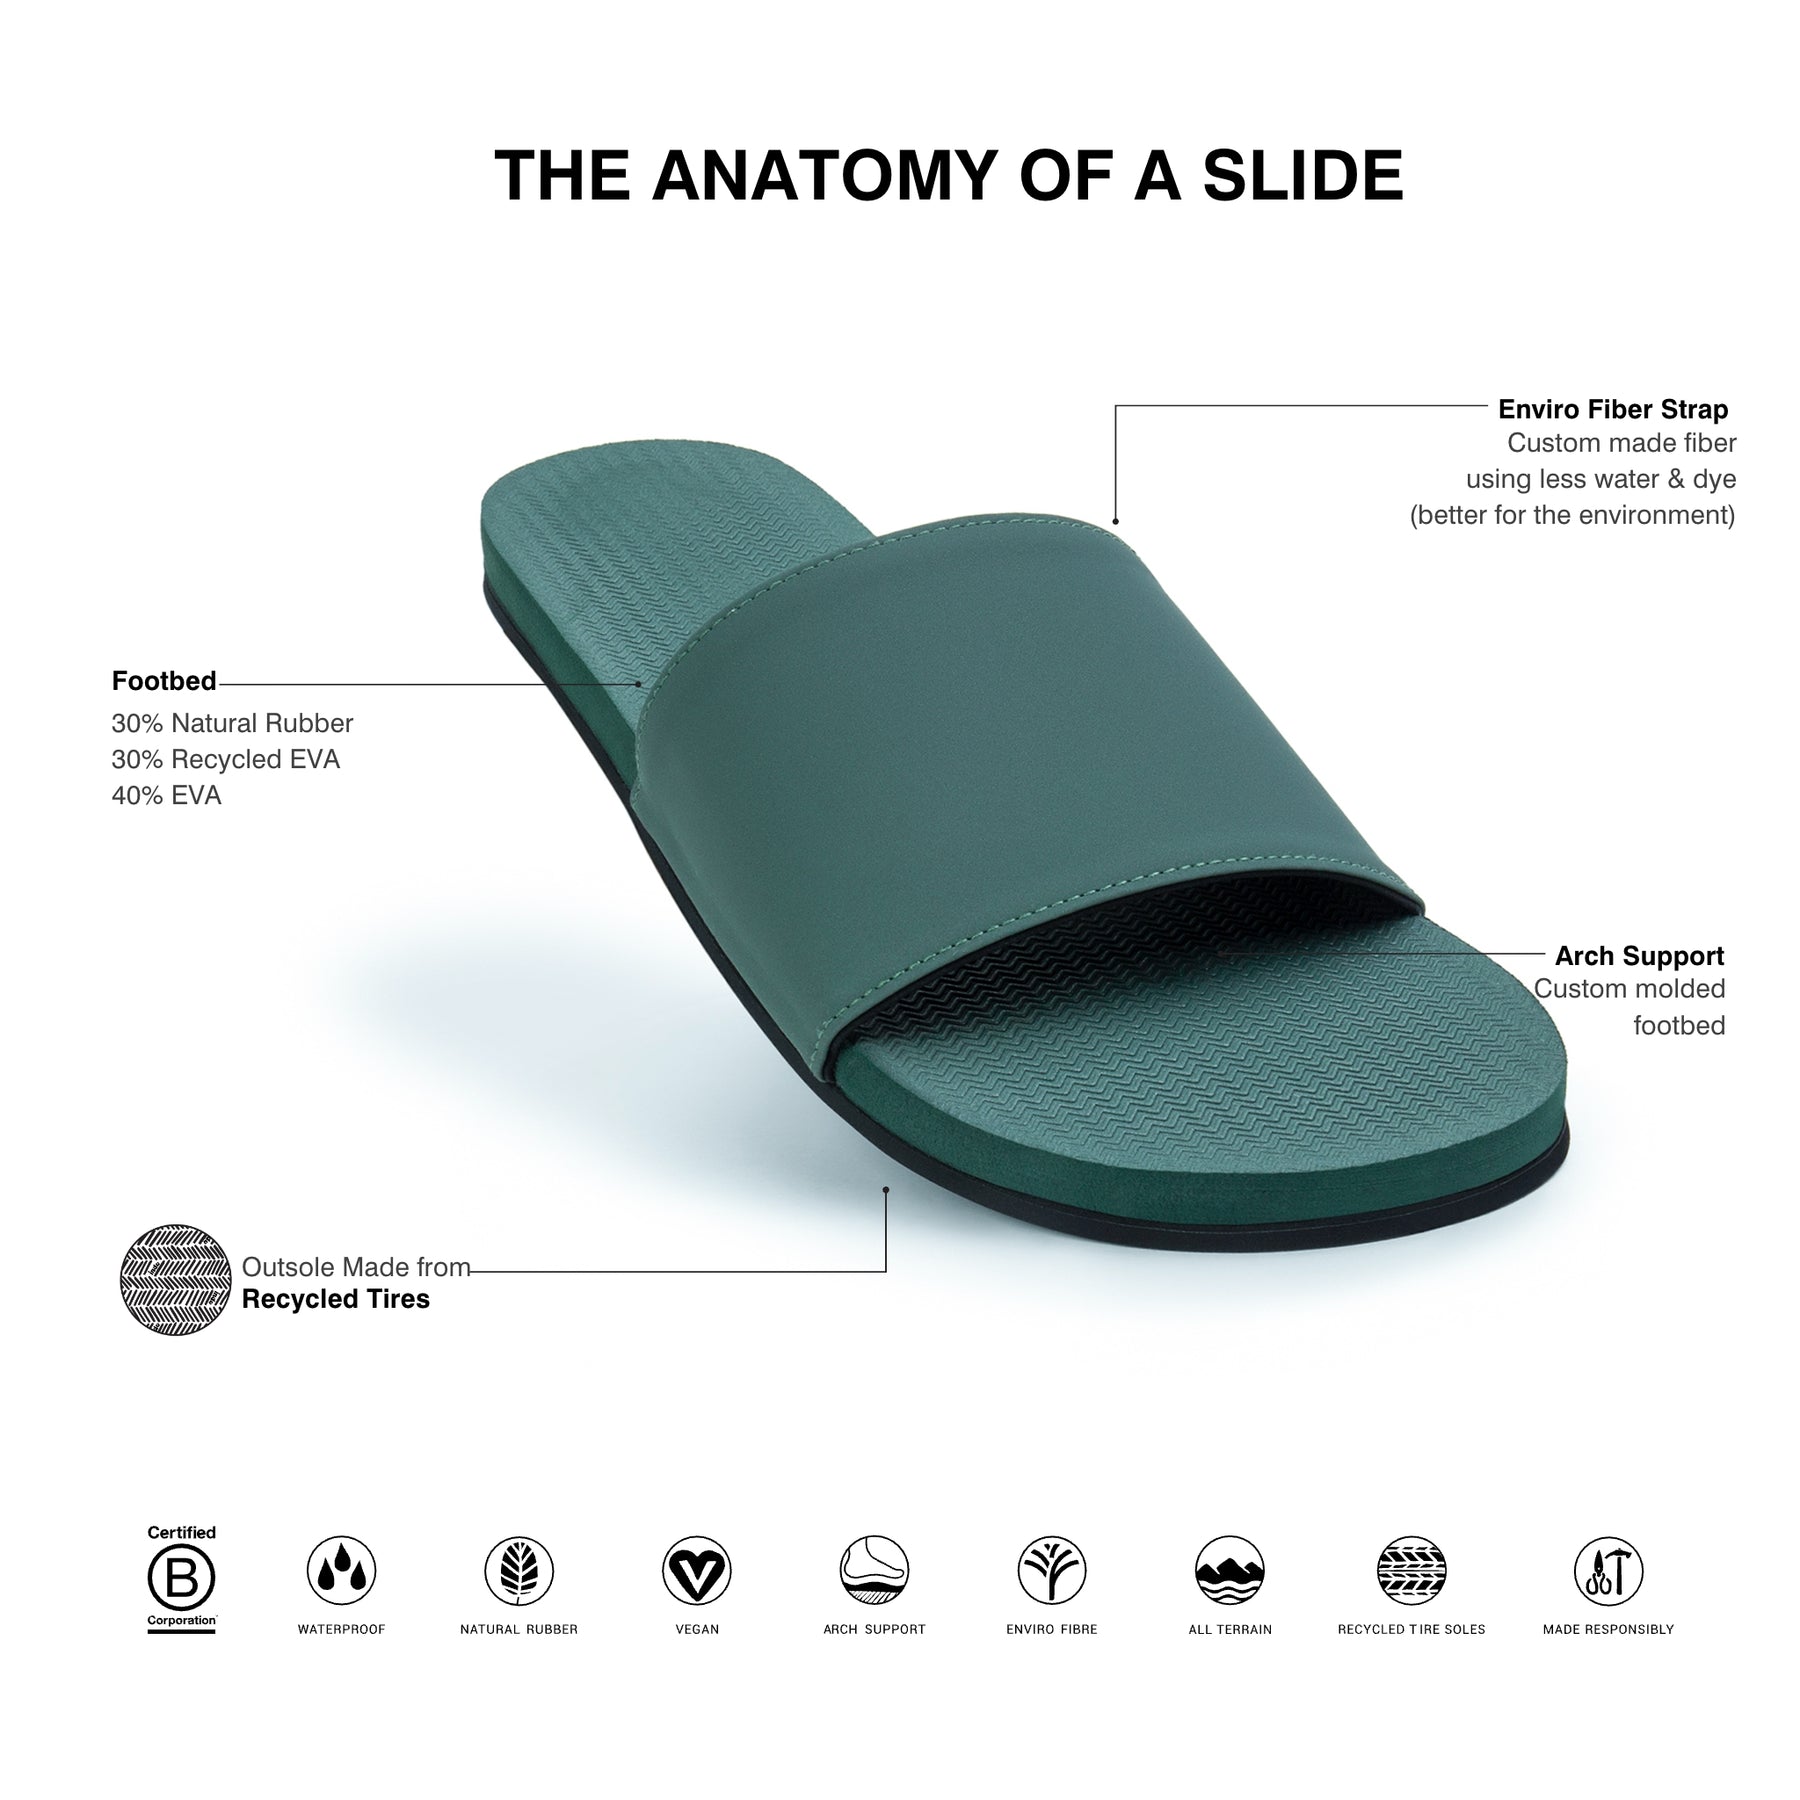 Men’s Slides - Leaf